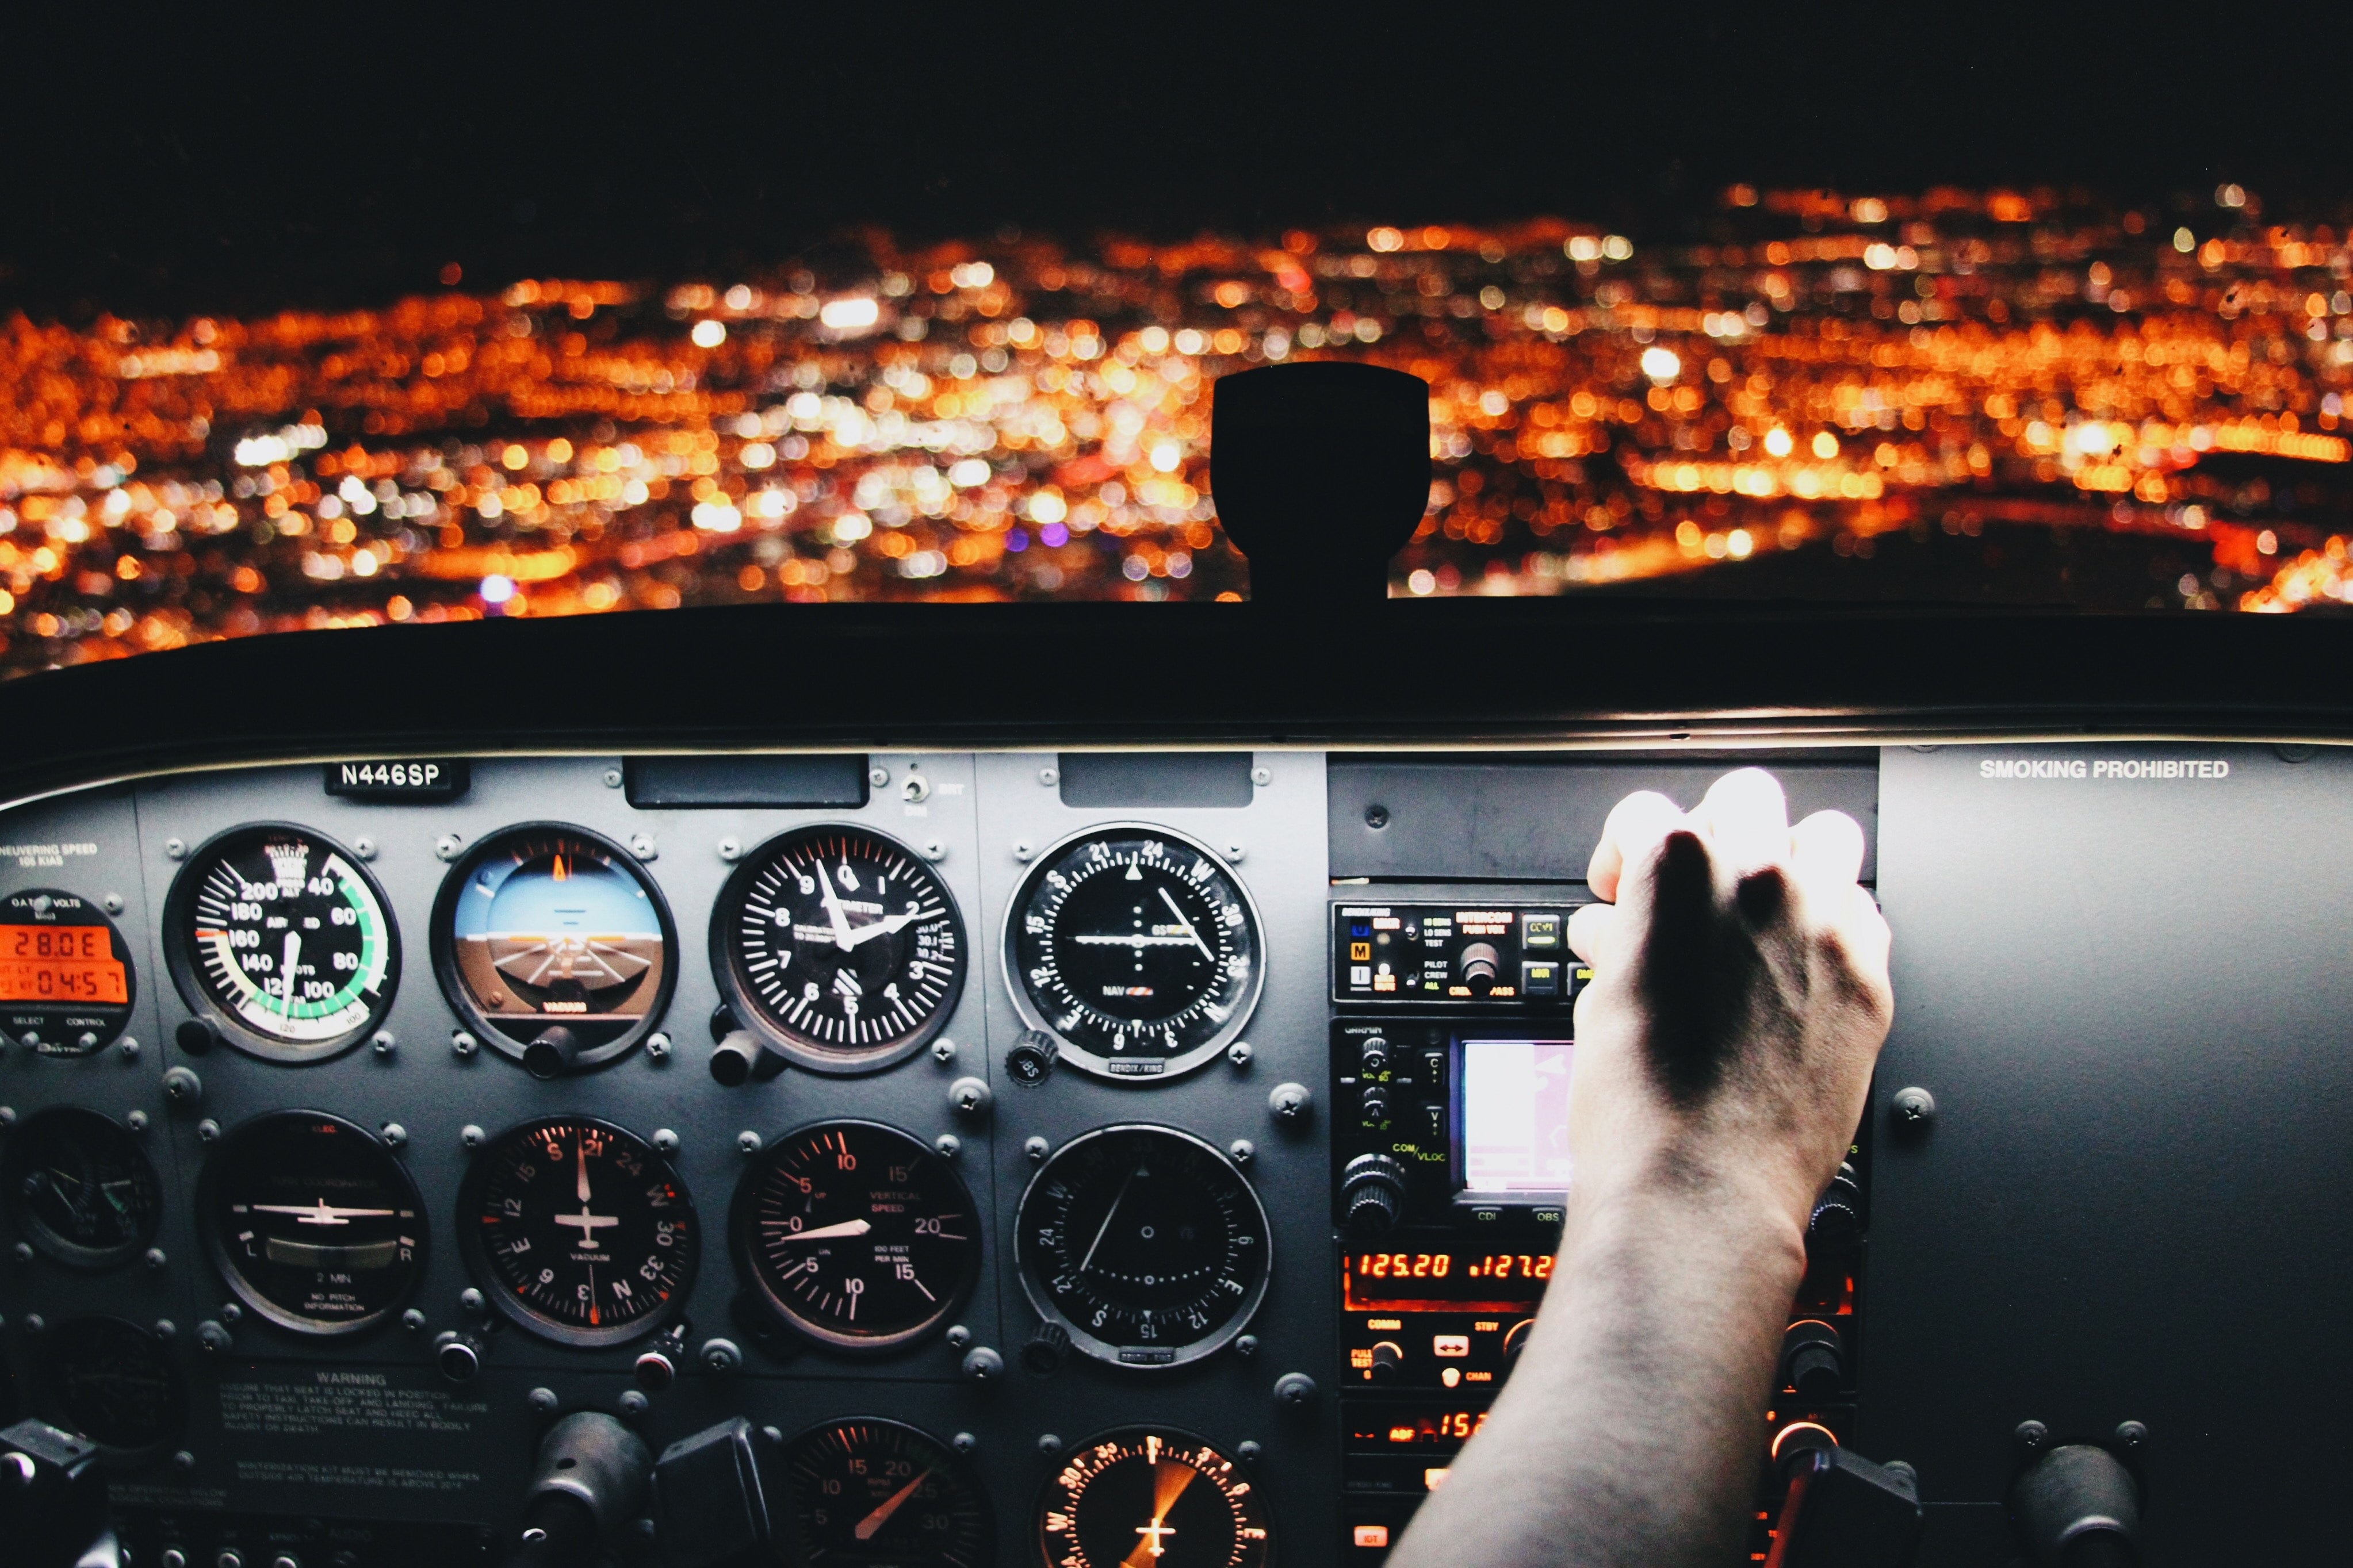 FAA MOSAIC Proposal